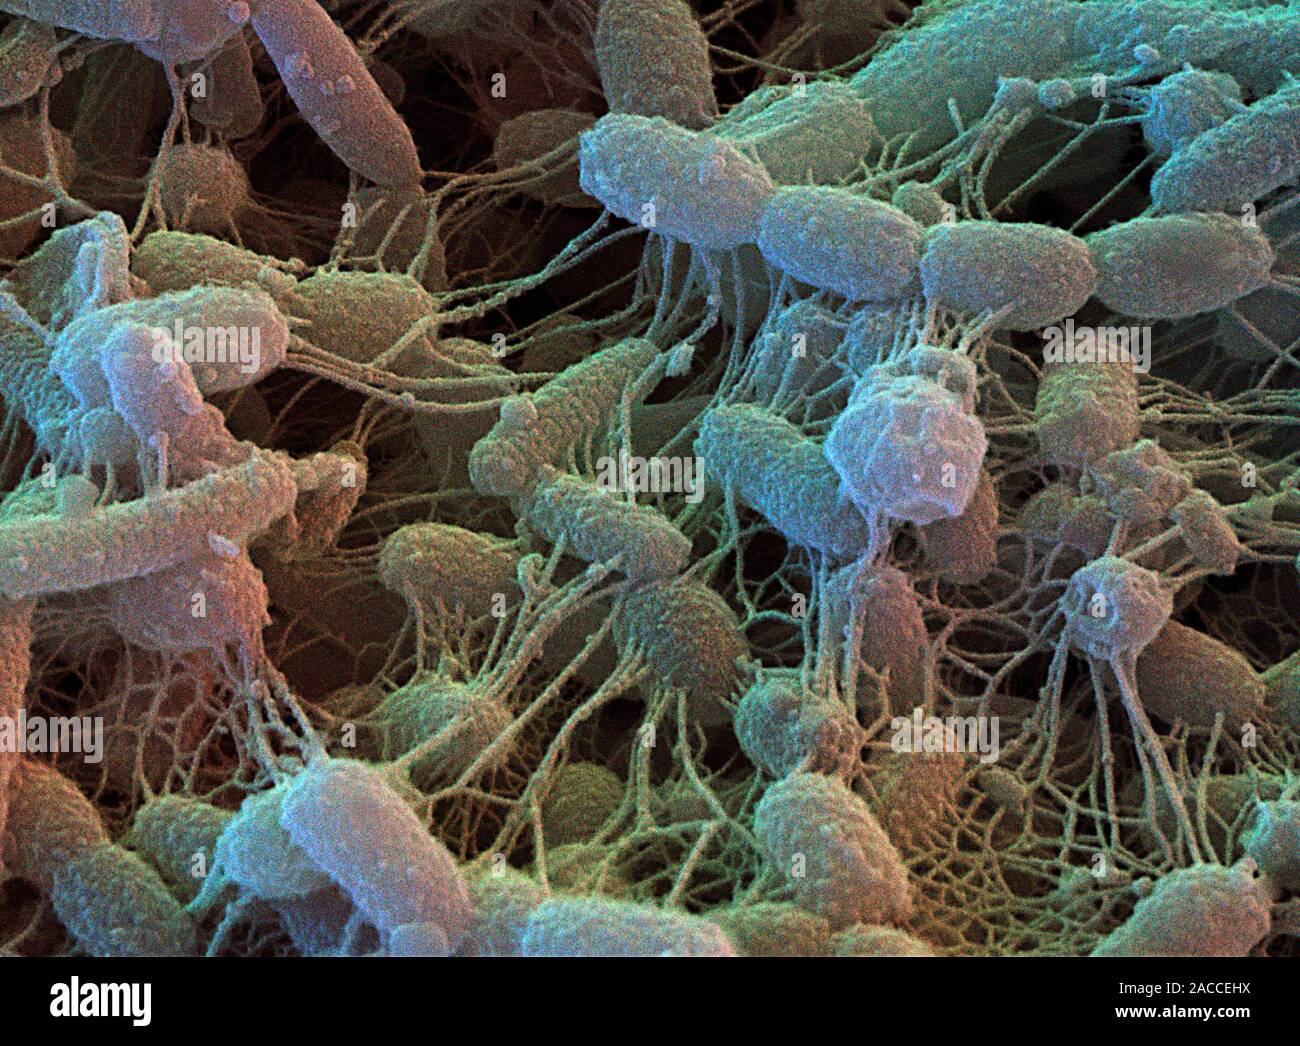 Инфекции в почве. Бактерии деструкторы. Сапрофиты бактерии гниения. Сапротрофные почвенные бактерии. Почвенные бактерии под микроскопом.